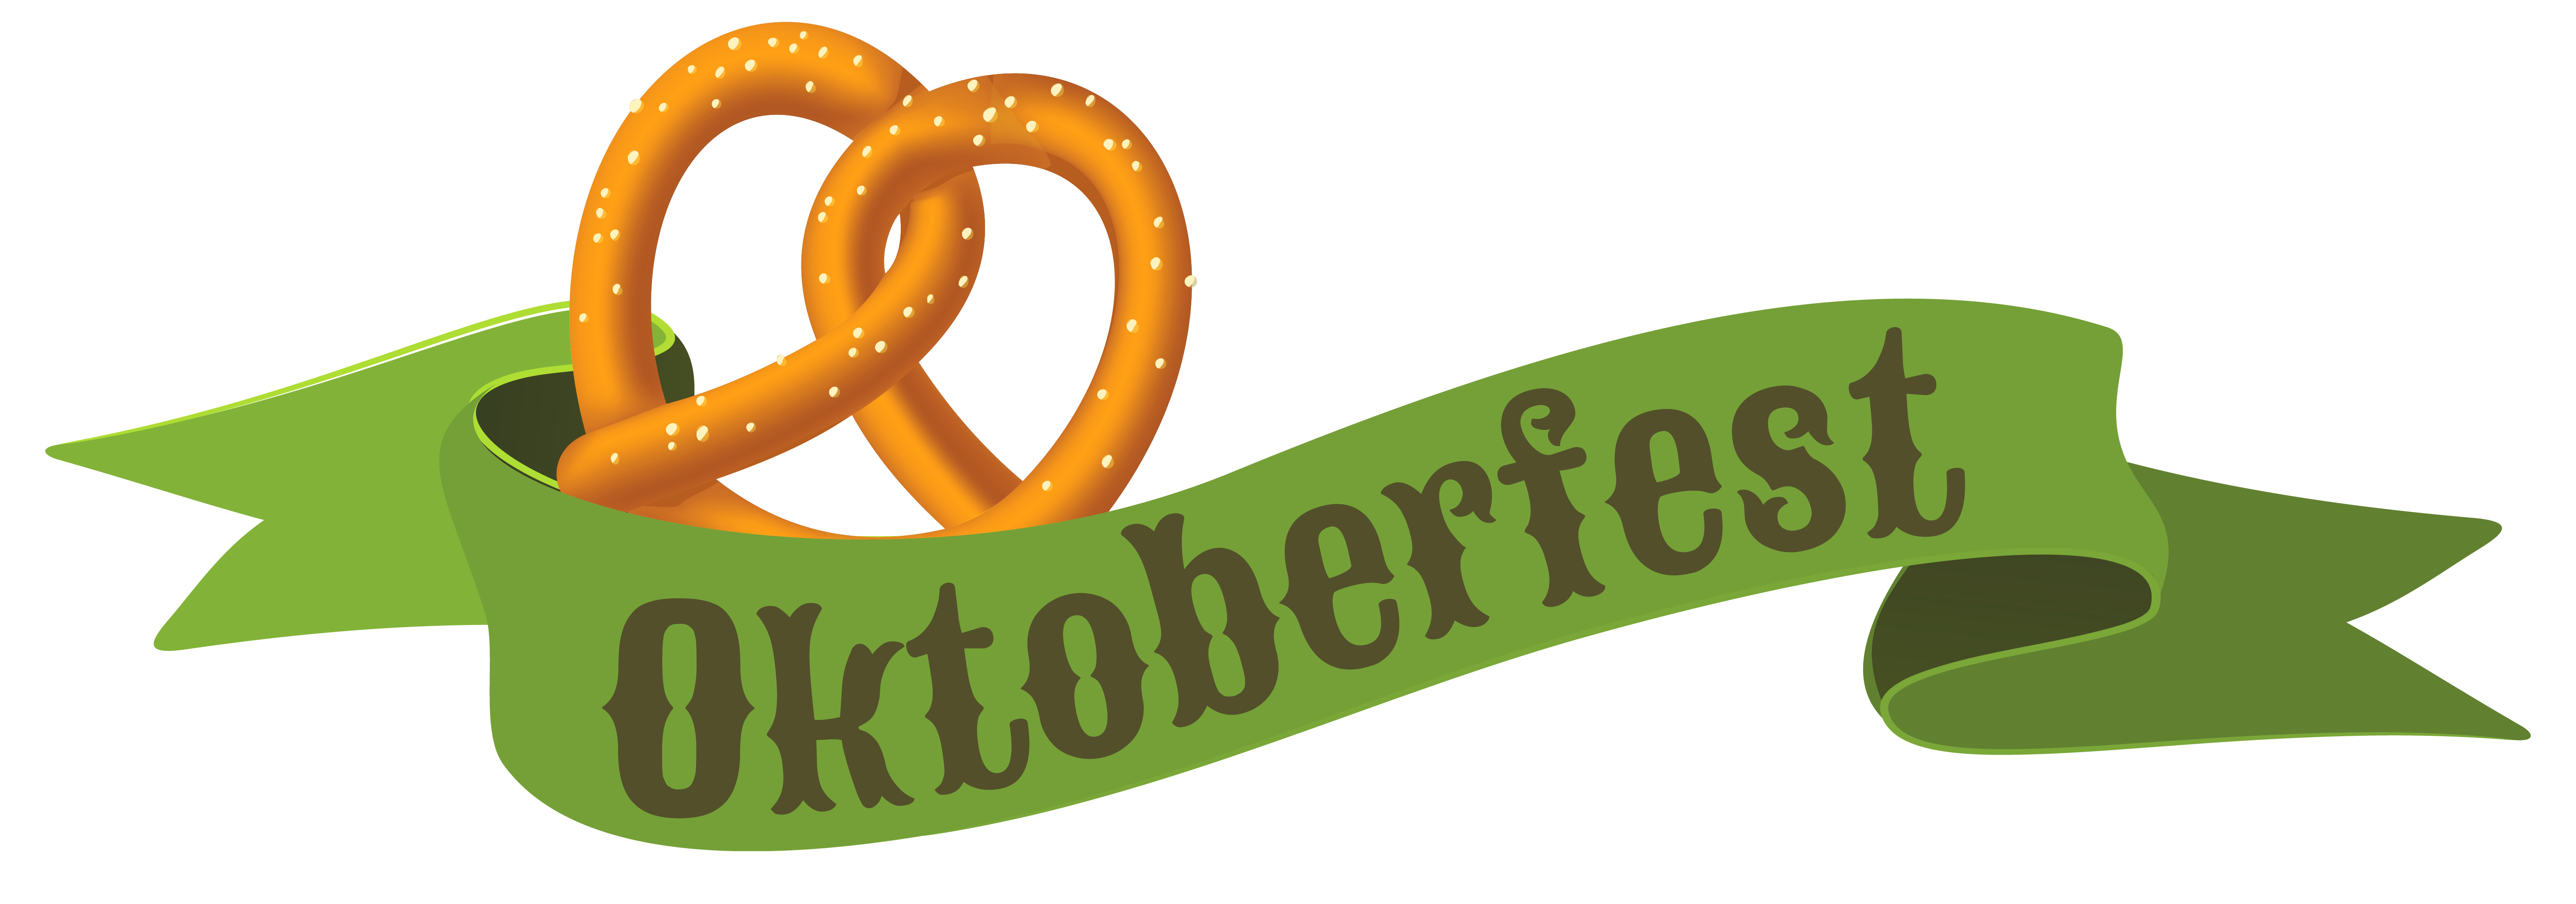 Oktoberfest green banner png. Facebook clipart high quality